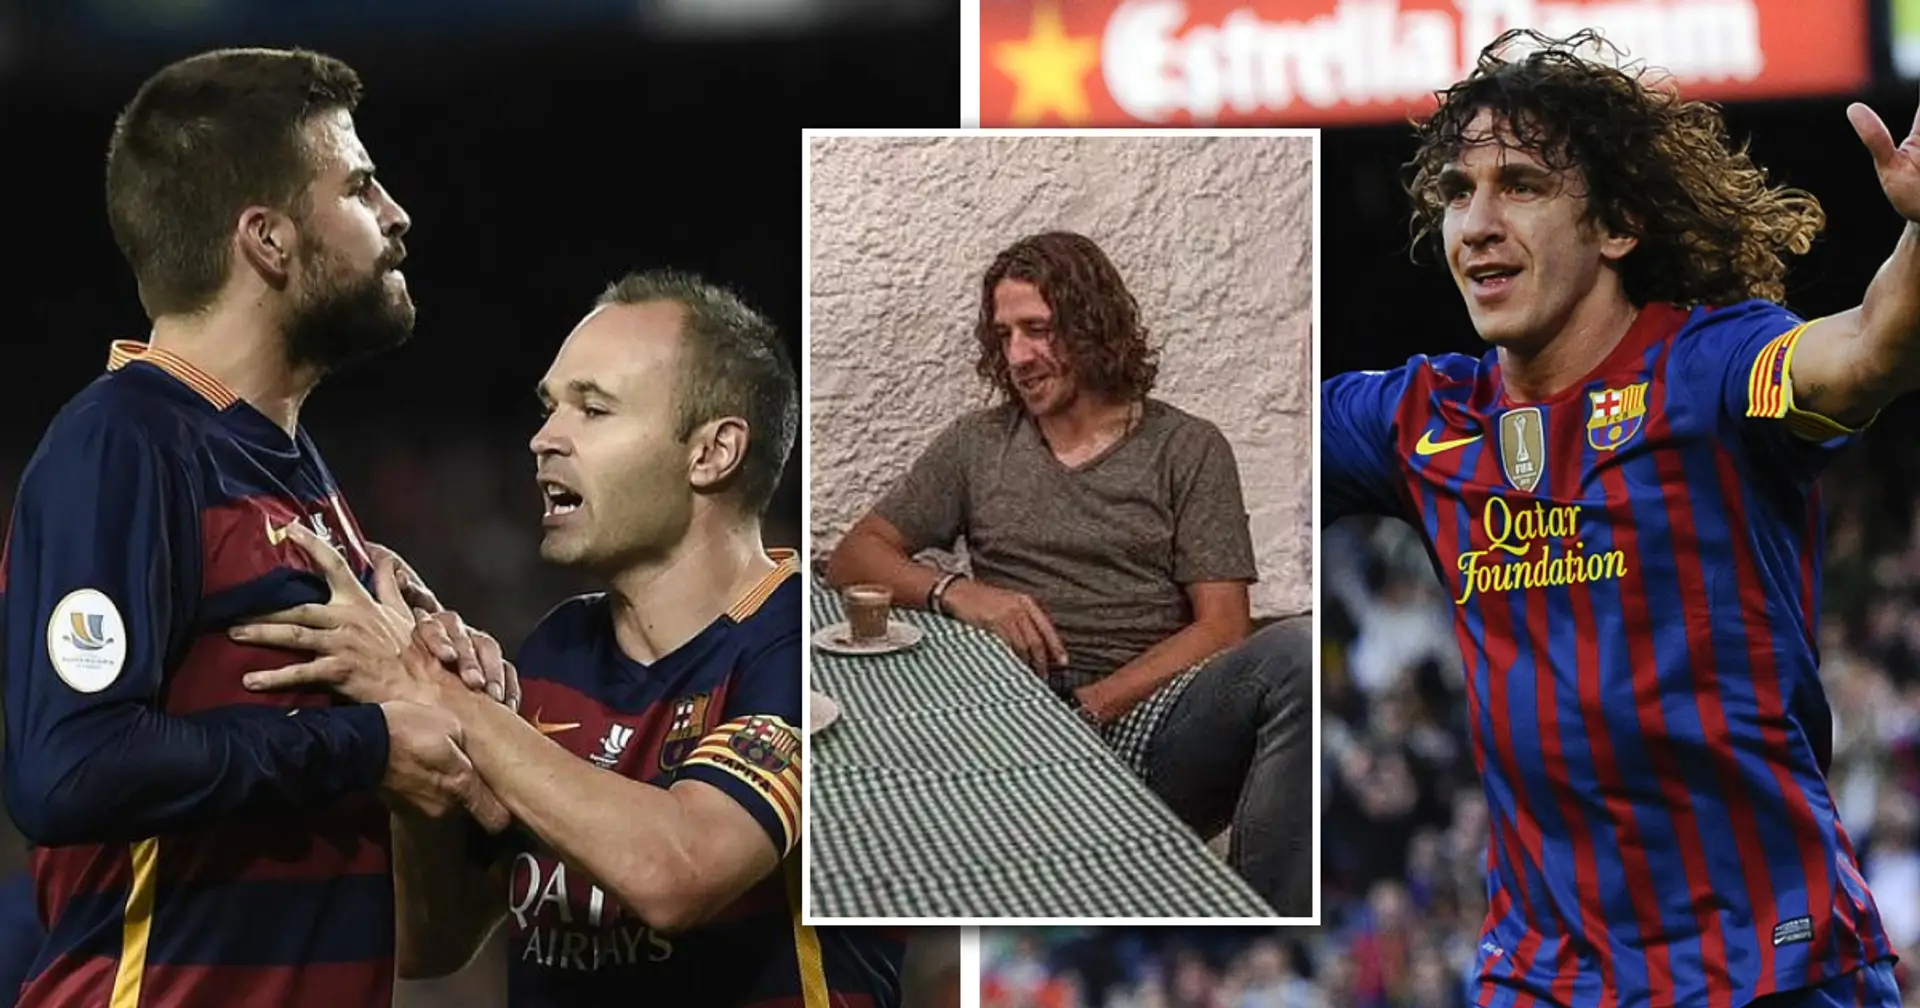 "Nur wenige haben das Barca-Trikot so verteidigt wie du": Carles Puyol über seinen ehemaligen Teamkollegen 